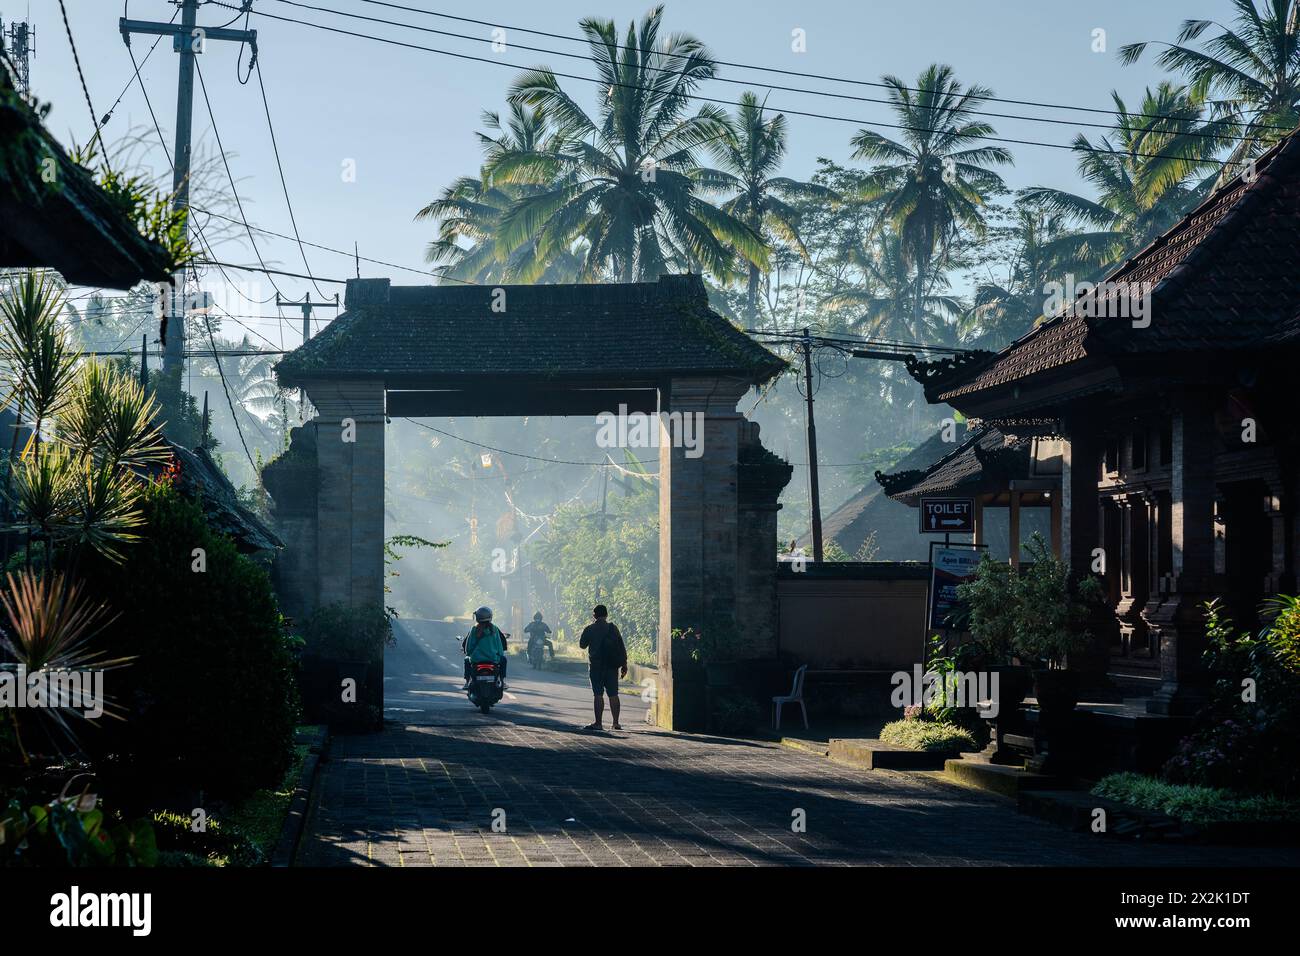 Eine Szene am frühen Morgen in einem tropischen Dorf mit Sonnenlicht, das durch Nebel filtert und Menschen und traditionelle Architektur inmitten von üppigen Bäumen hervorhebt Stockfoto